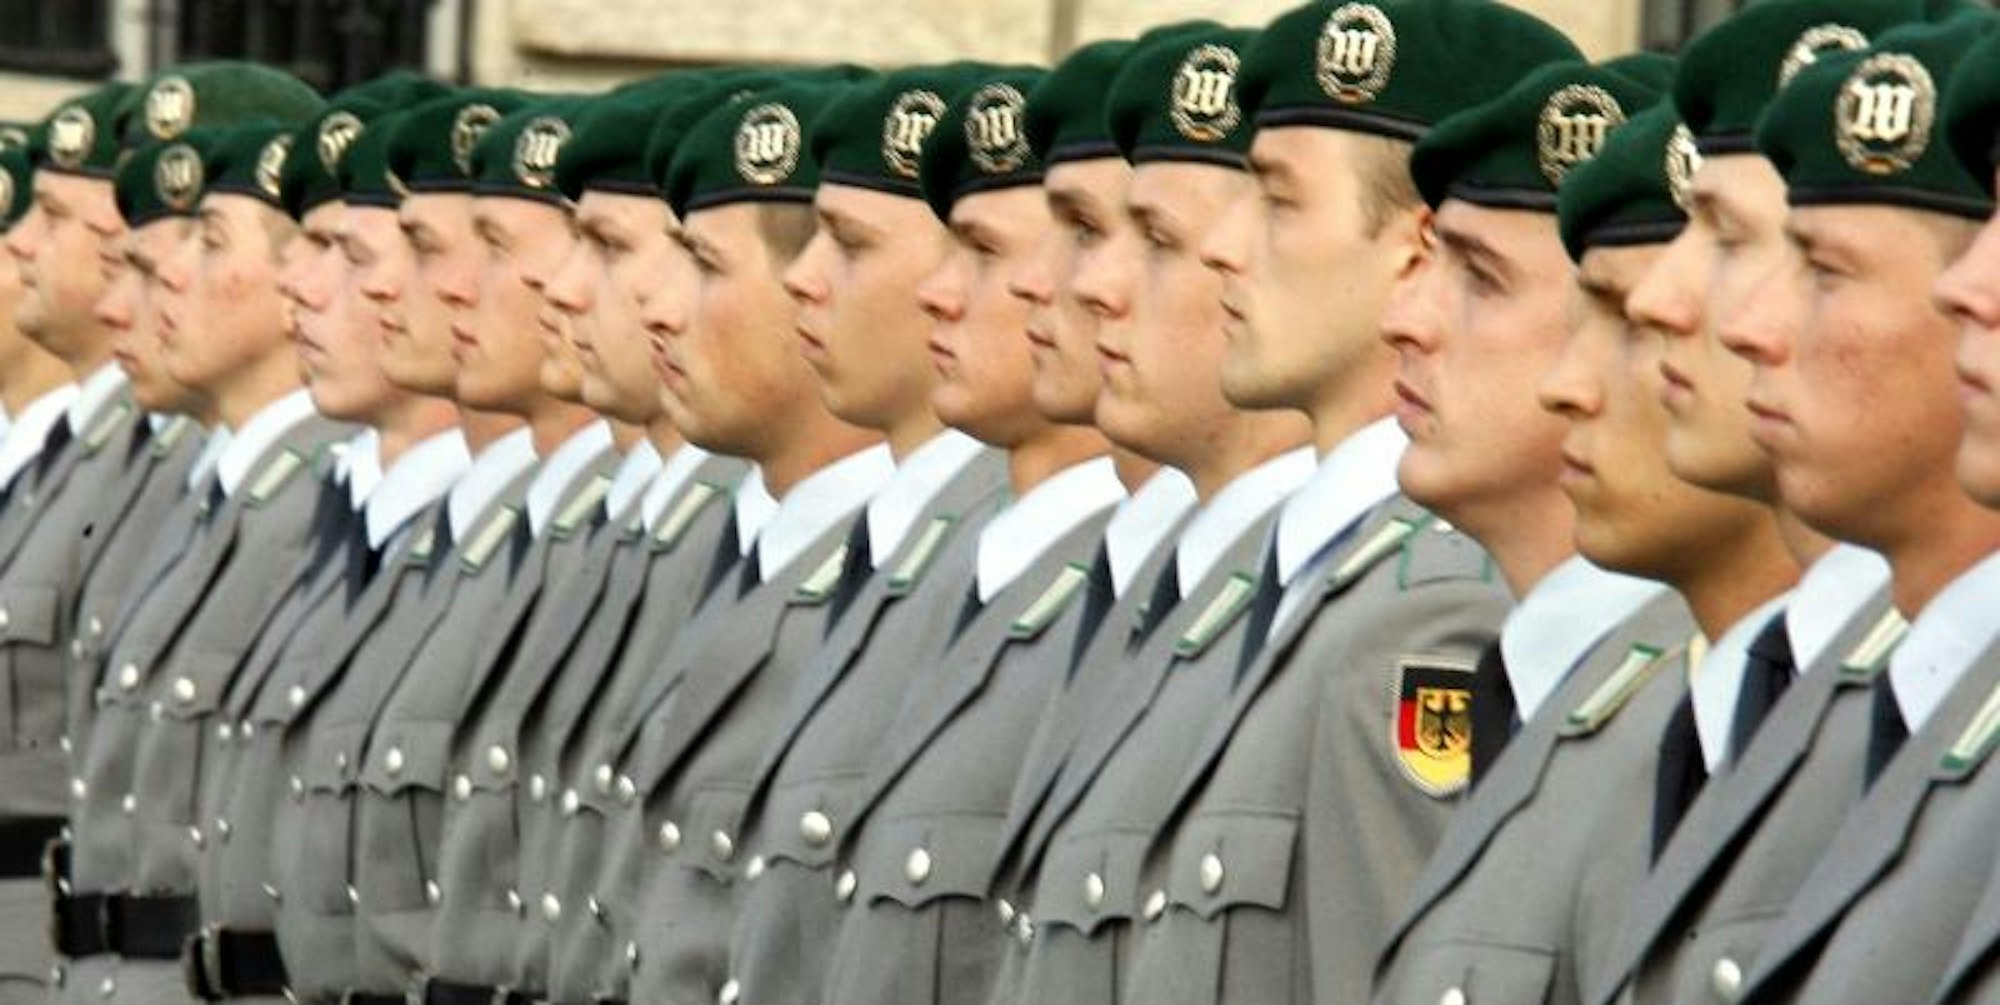 Symbolbild: Rekruten der Bundeswehr